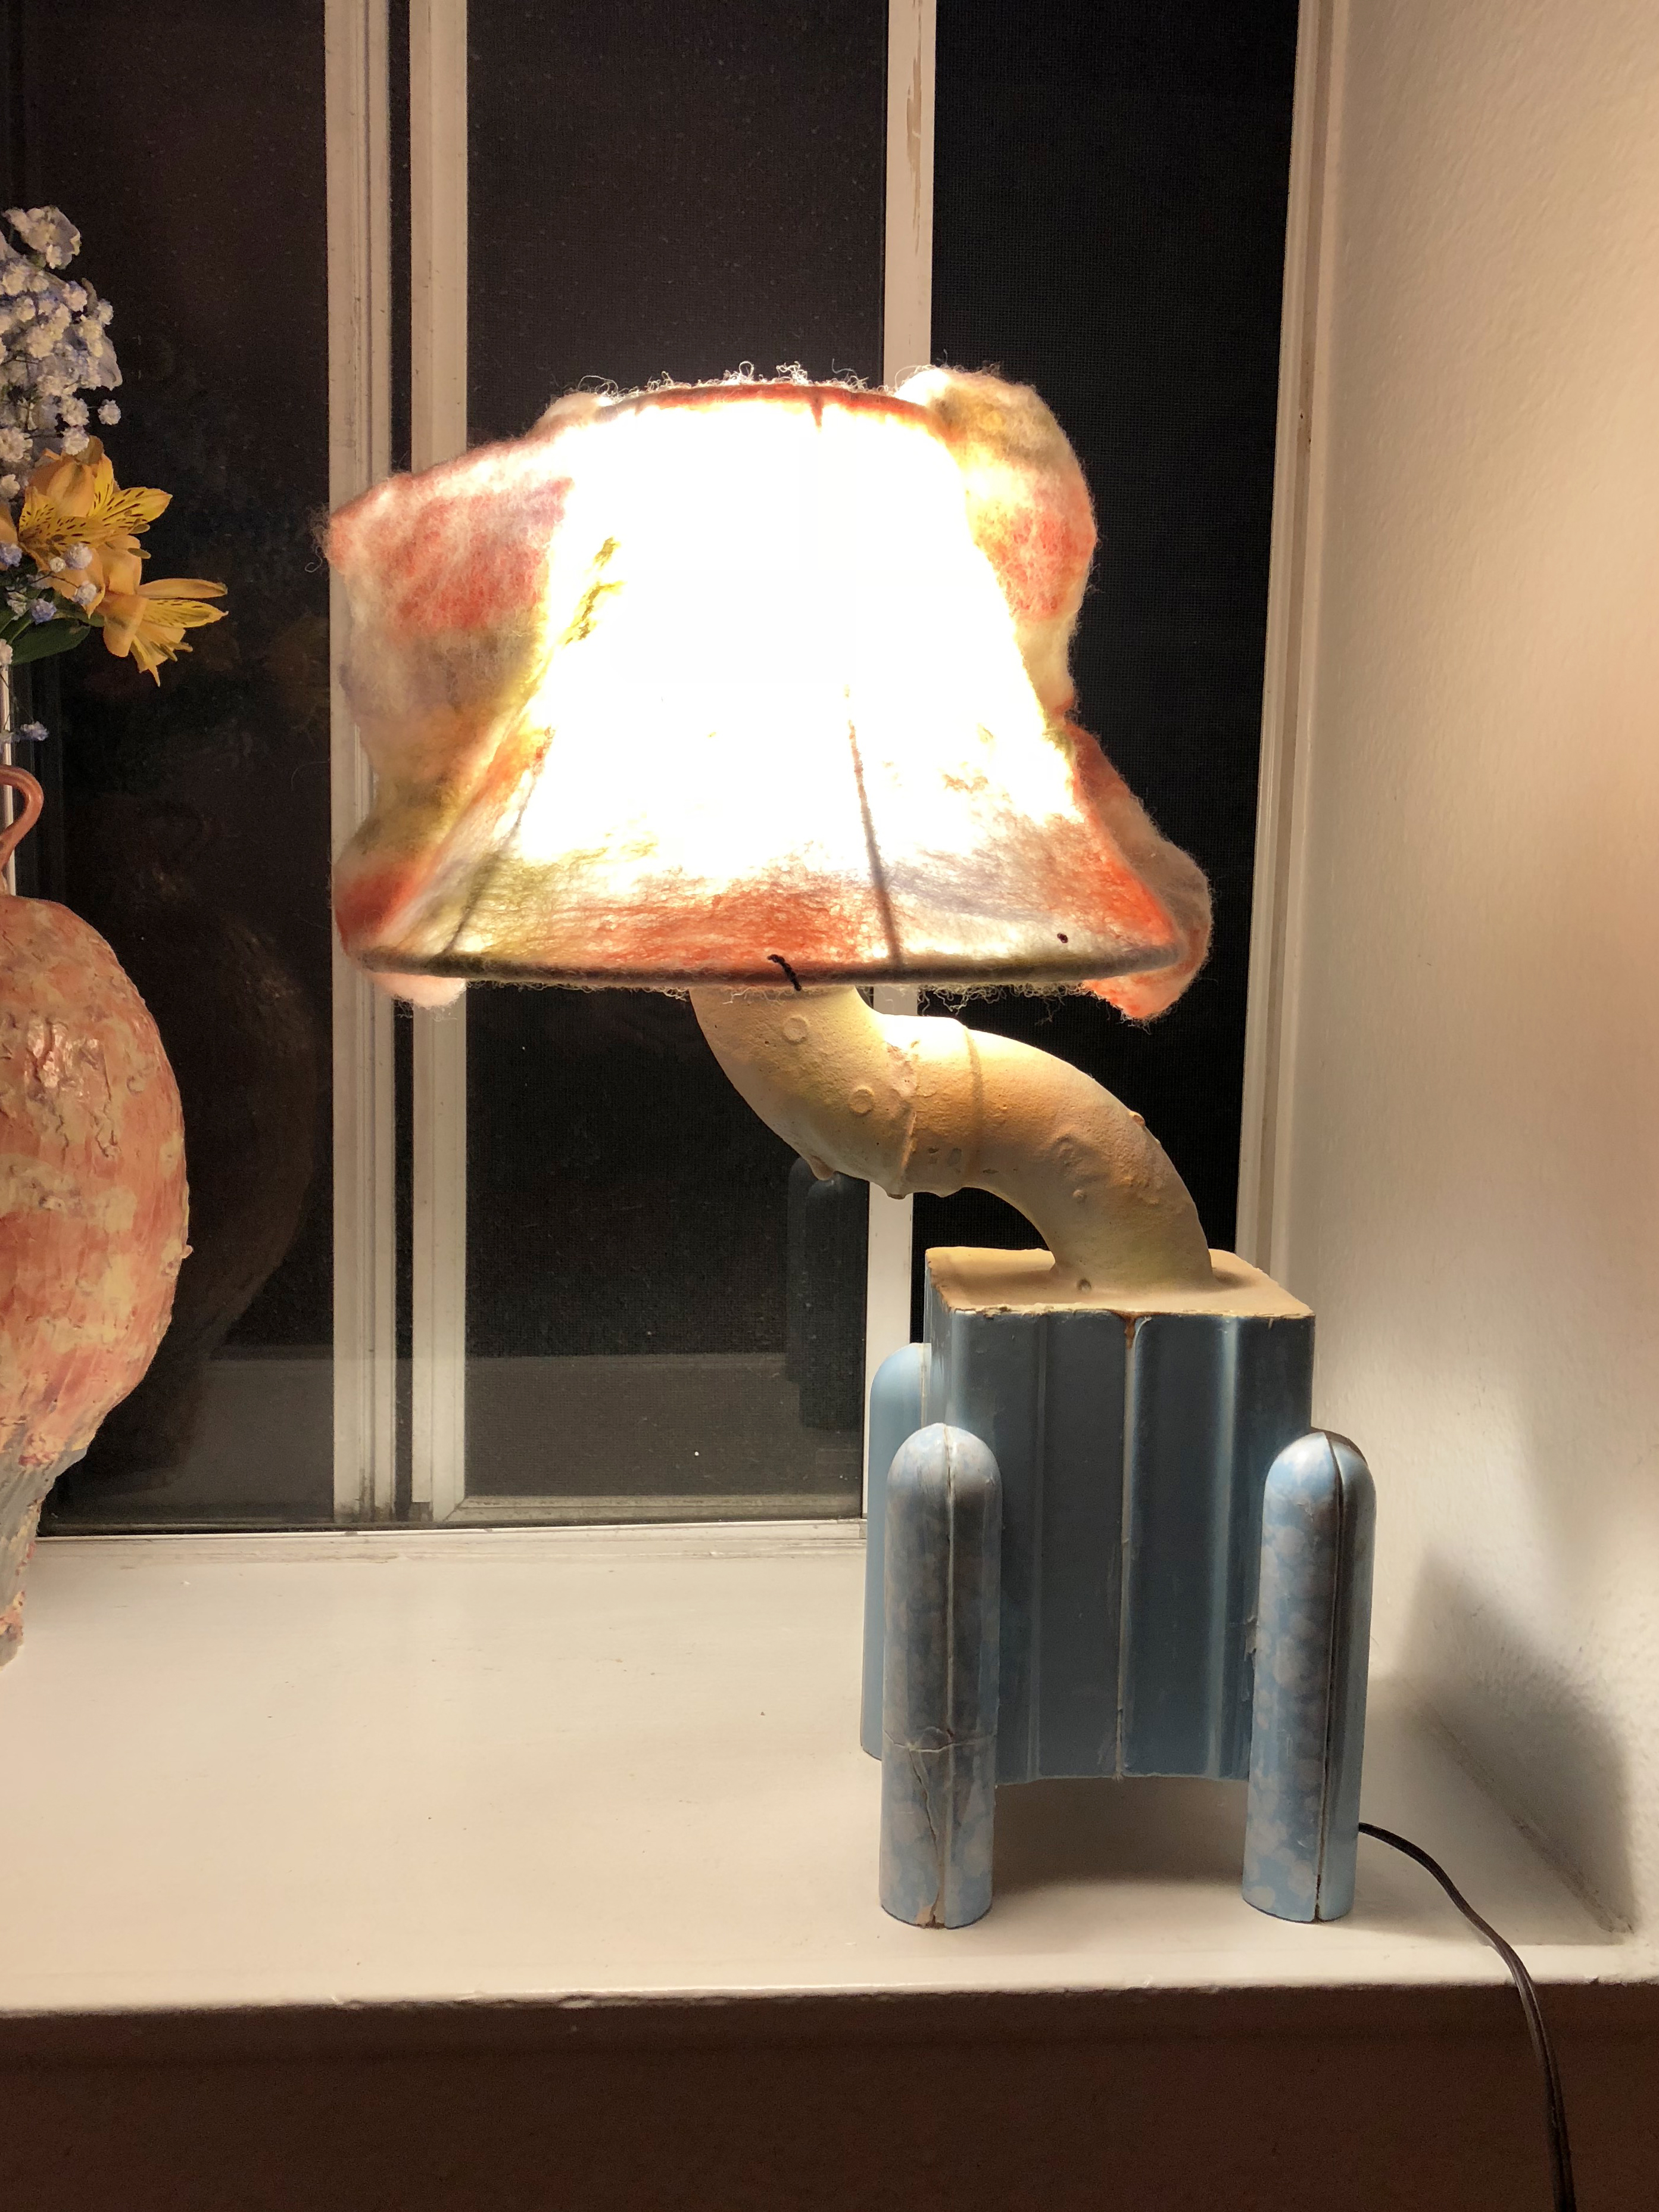 Felt lamp with a blue base on a windowsill